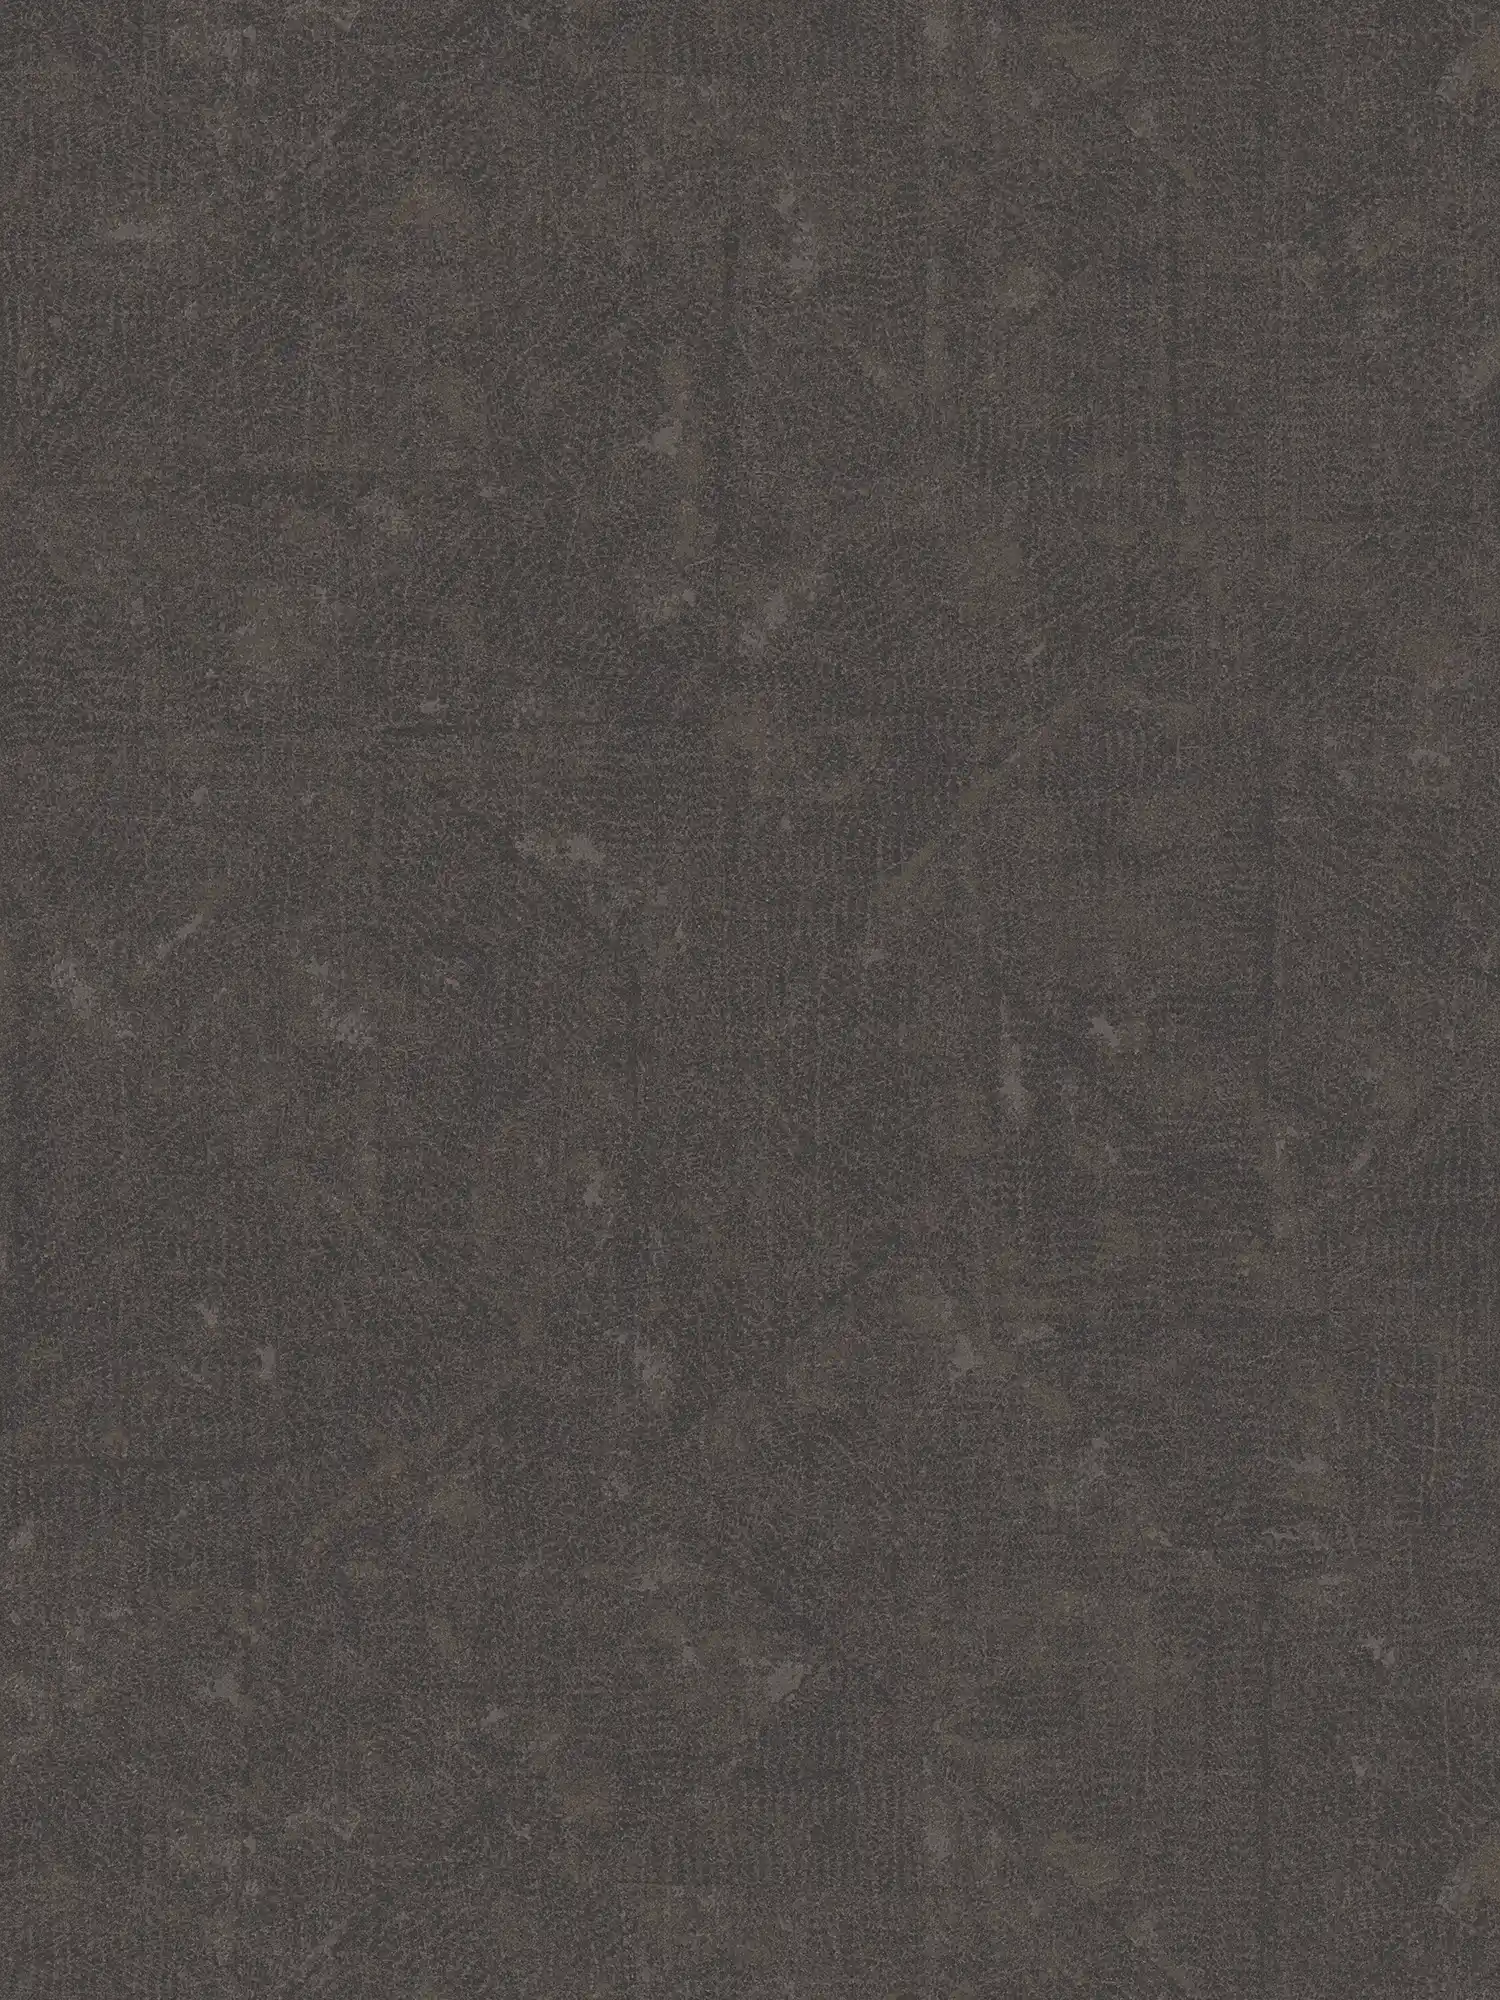 Donkerbruin vliesbehang met subtiel patroon - bruin, zwart, brons
